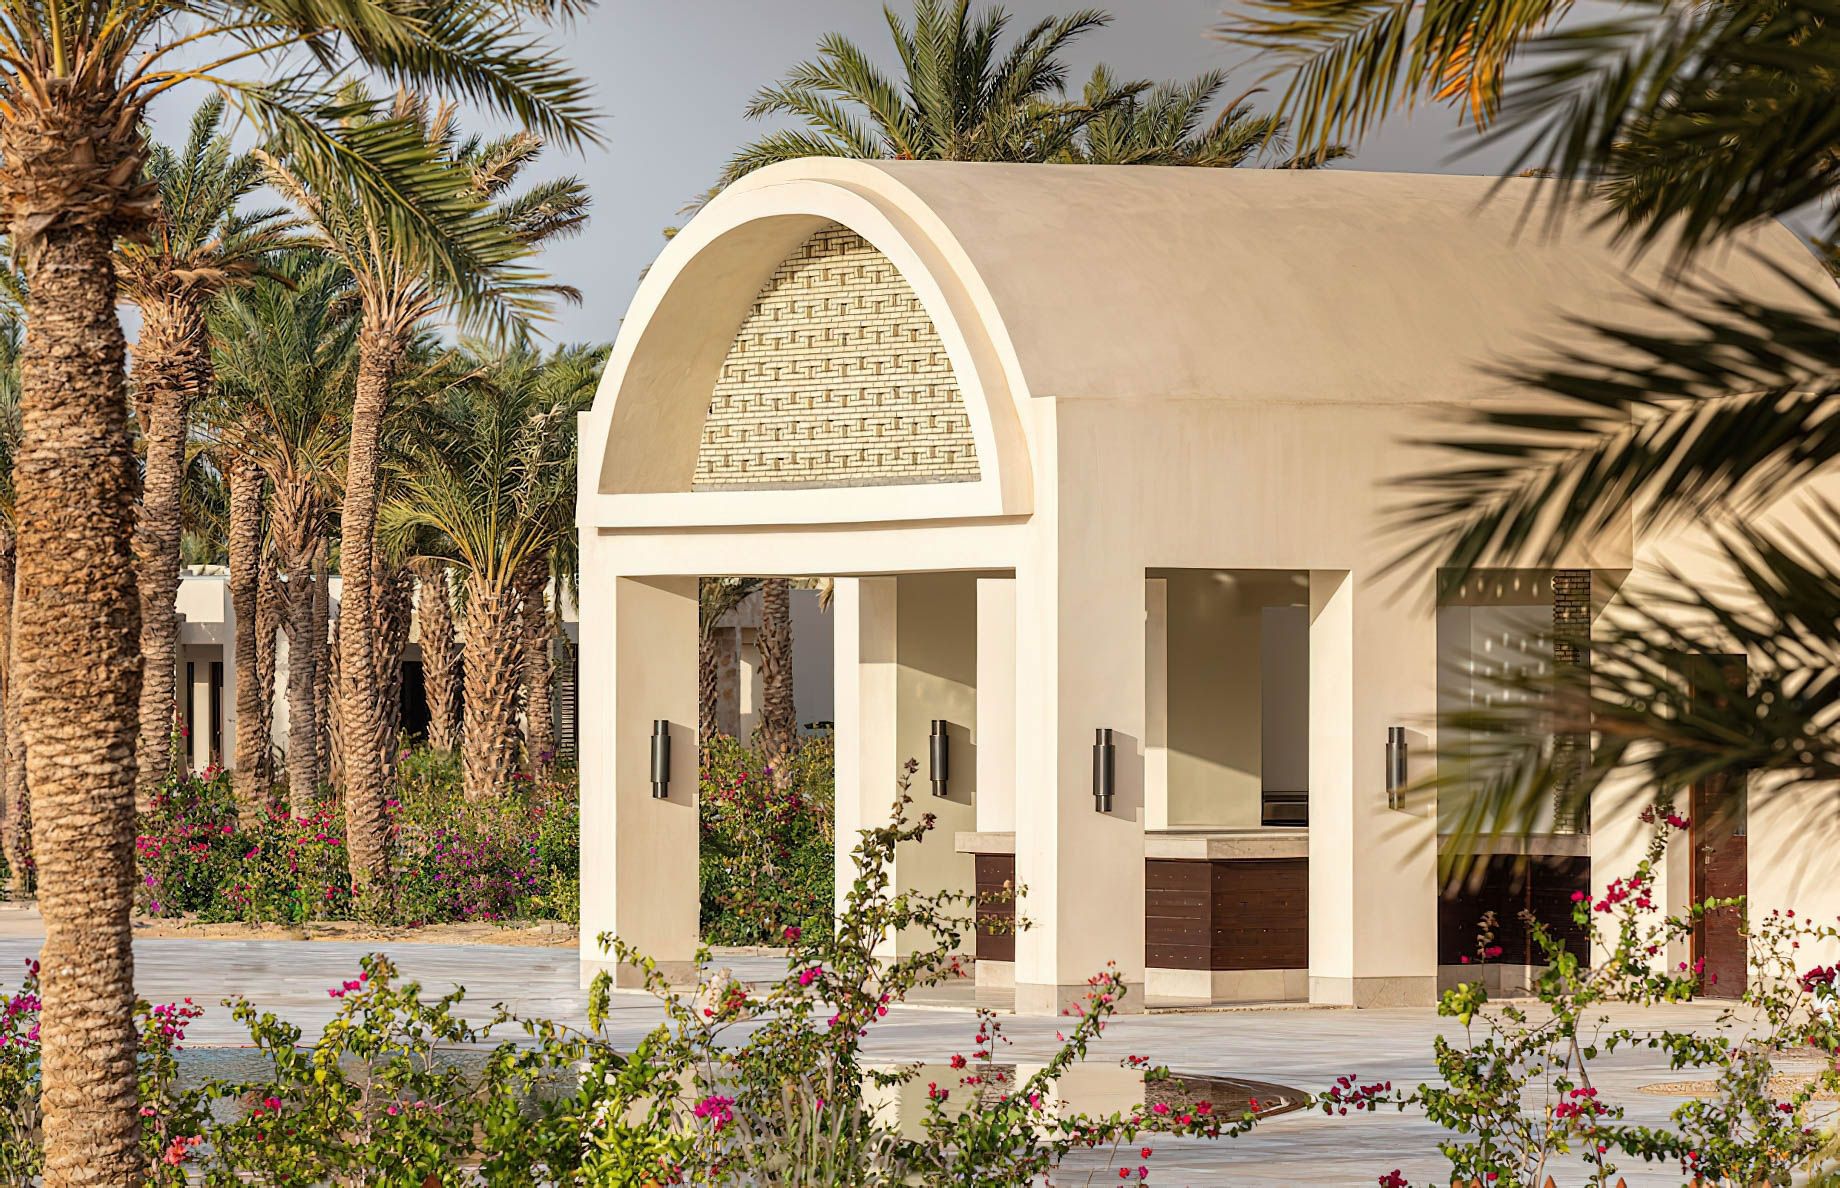 Anantara Sahara Tozeur Resort & Villas – Tozeur, Tunisia – Lush Palm Trees